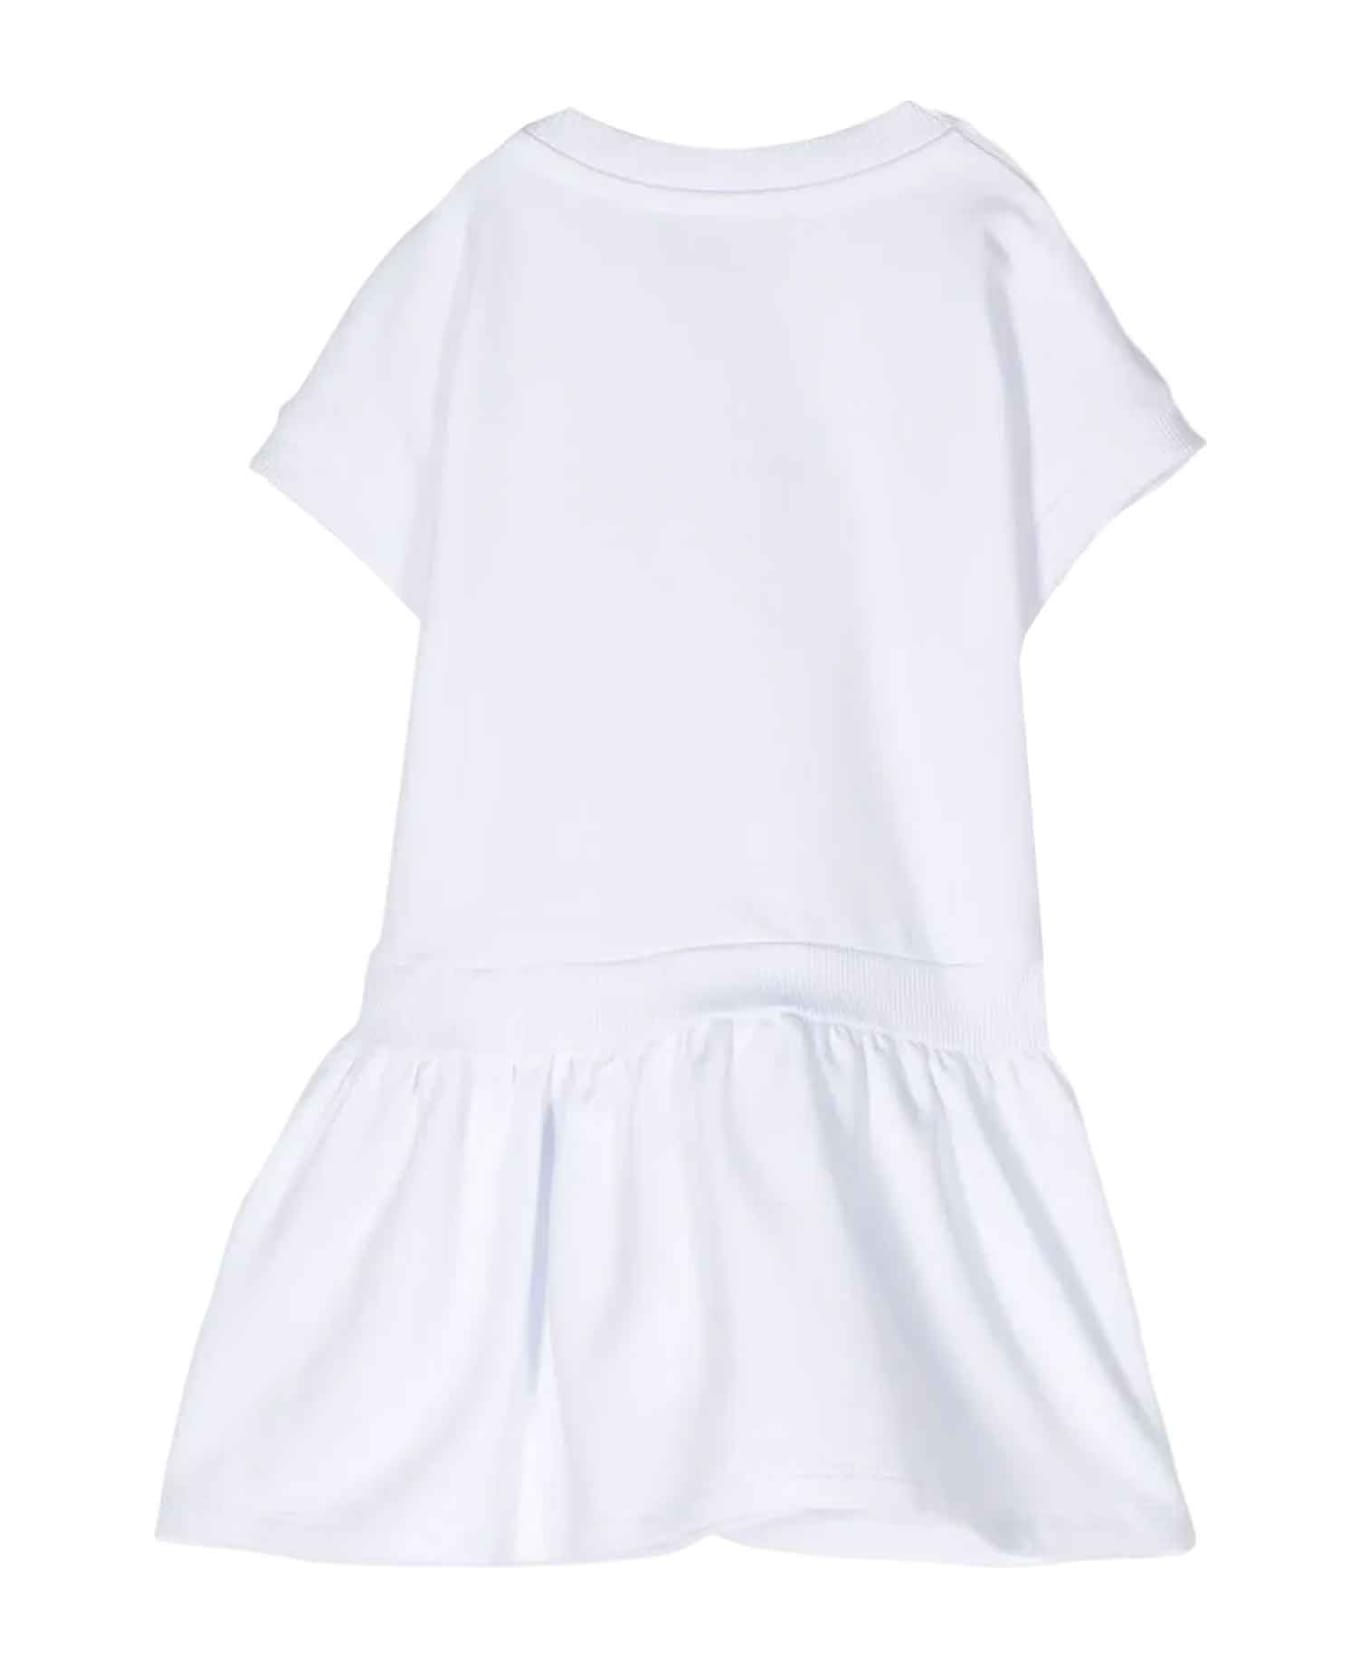 Moschino White Dress Baby Girl - Bianco